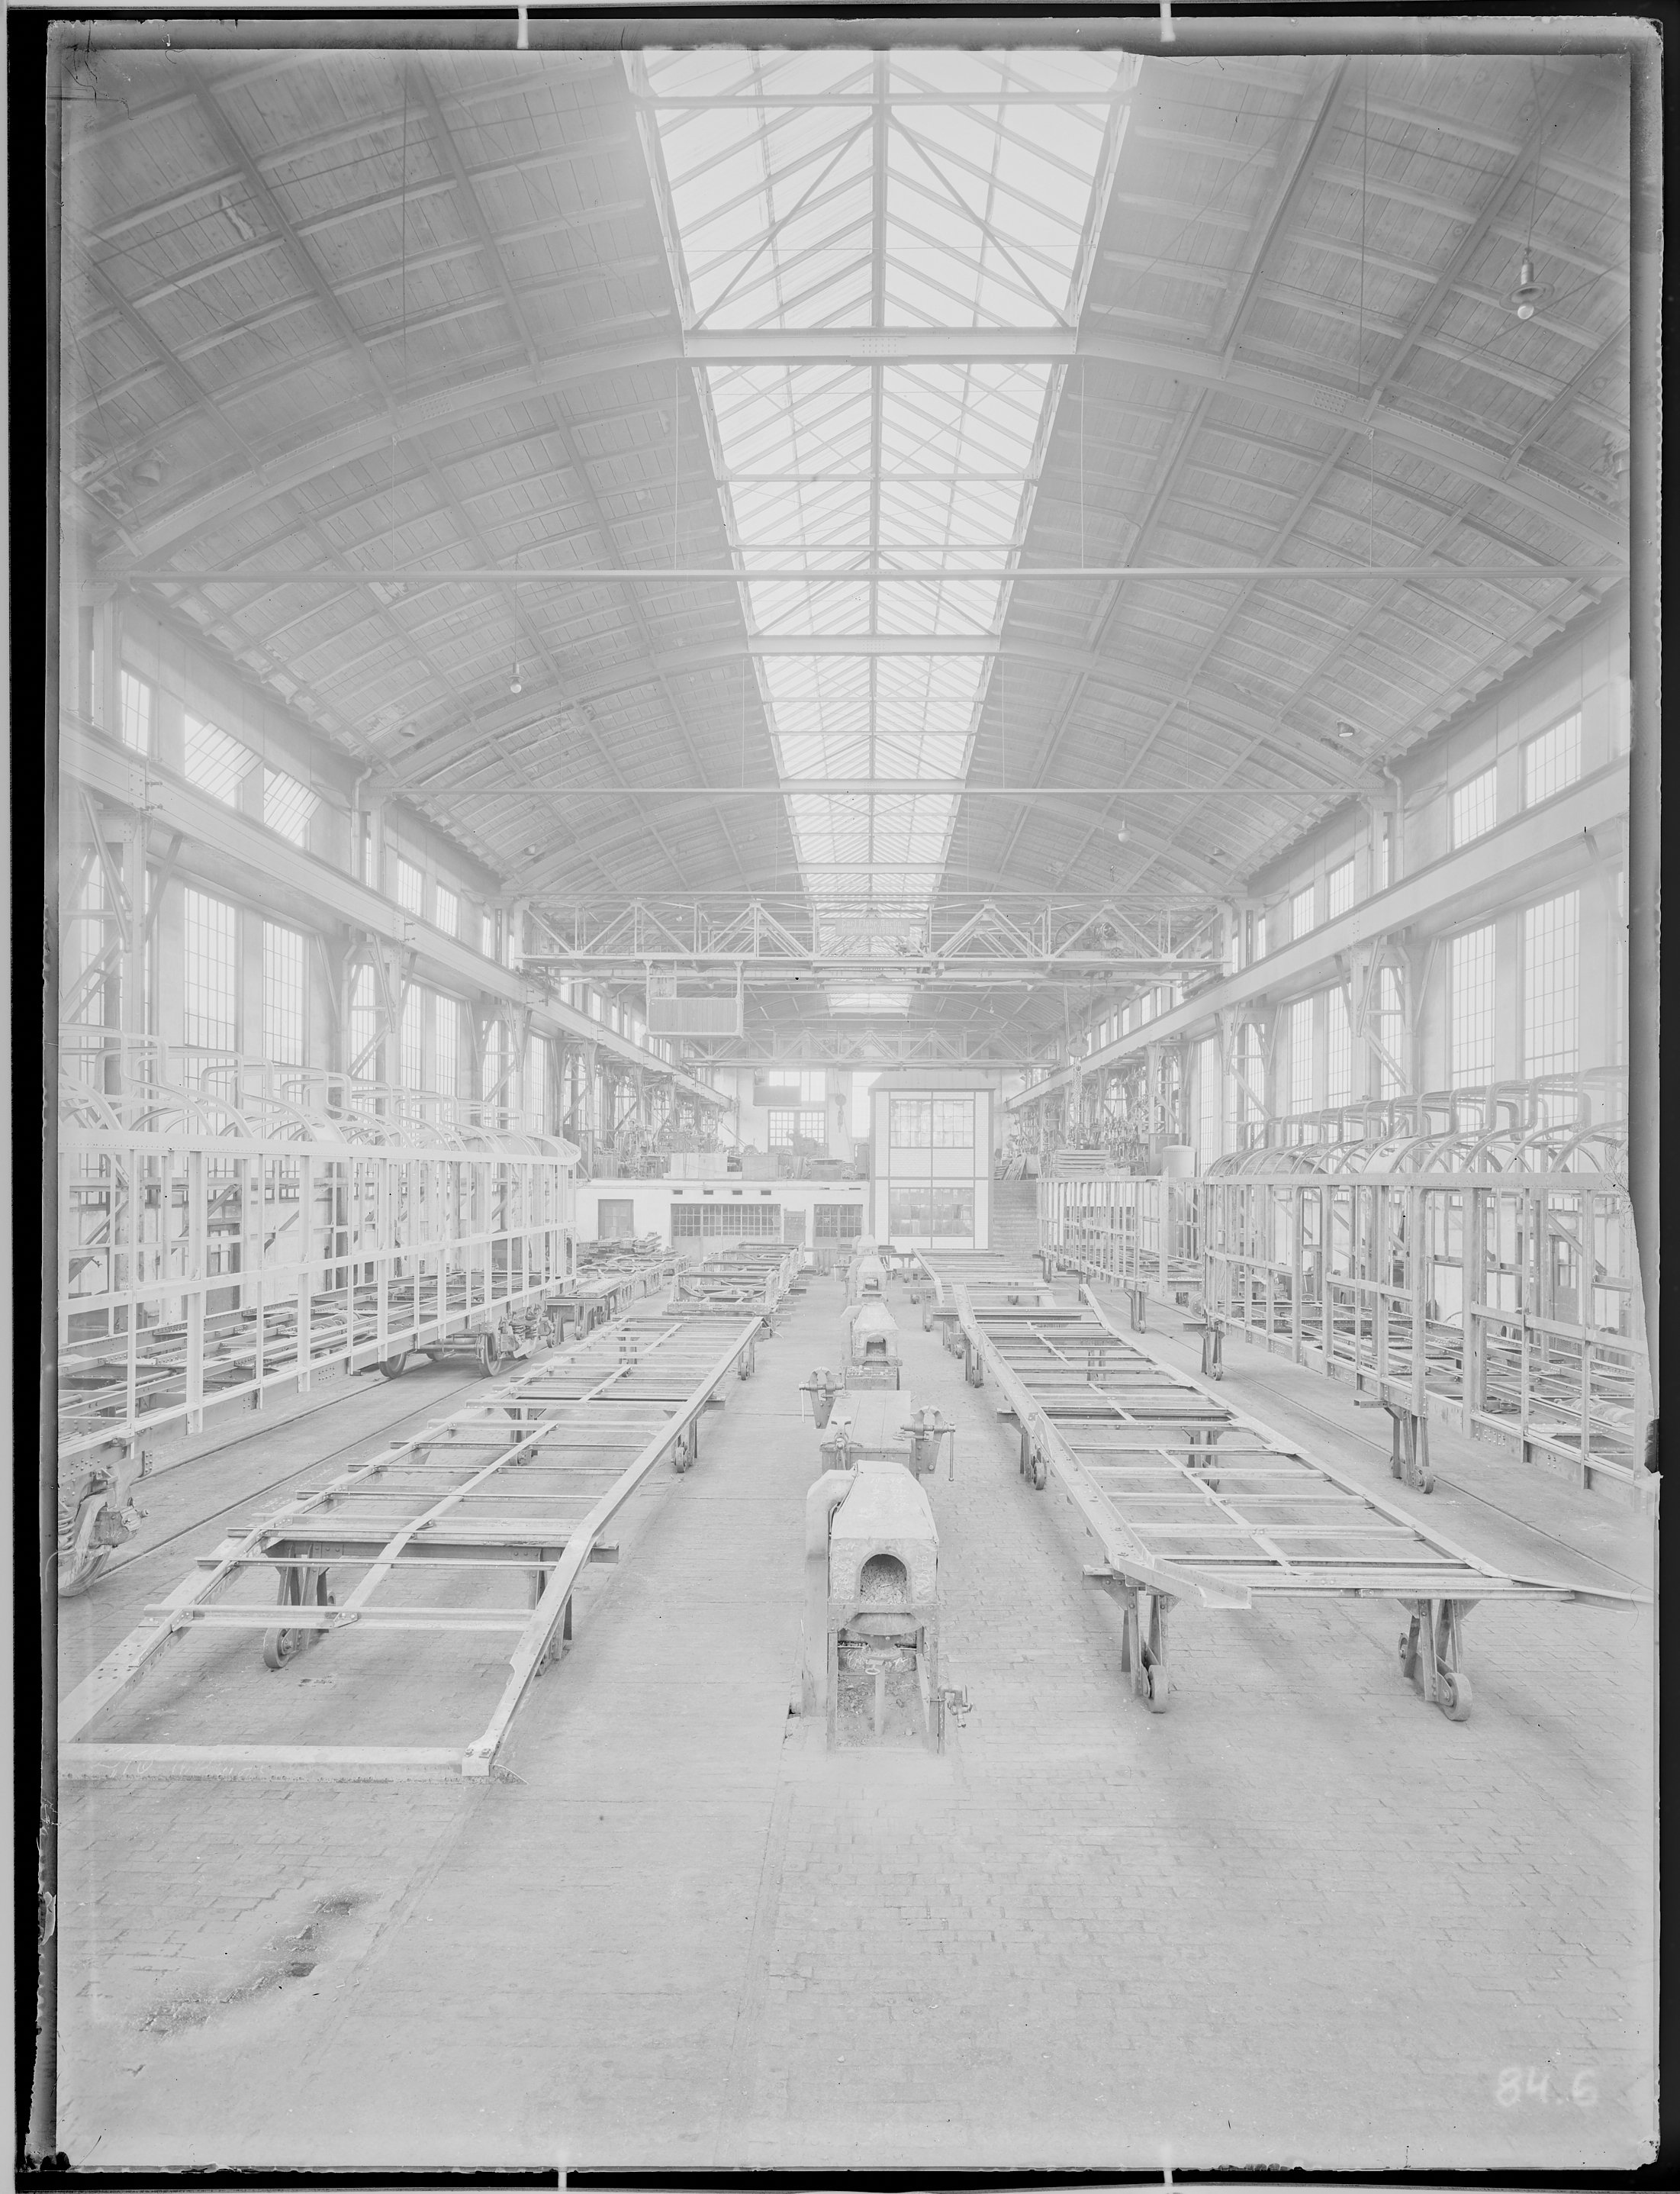 Otografie: Gestellbau der Waggonfabrik Görlitz Aktiengesellschaft (Innenansicht), Werkhalle mit Kastengerippen und Untergestellen, 1920. (Verkehrsmuseum Dresden CC BY-NC-SA)